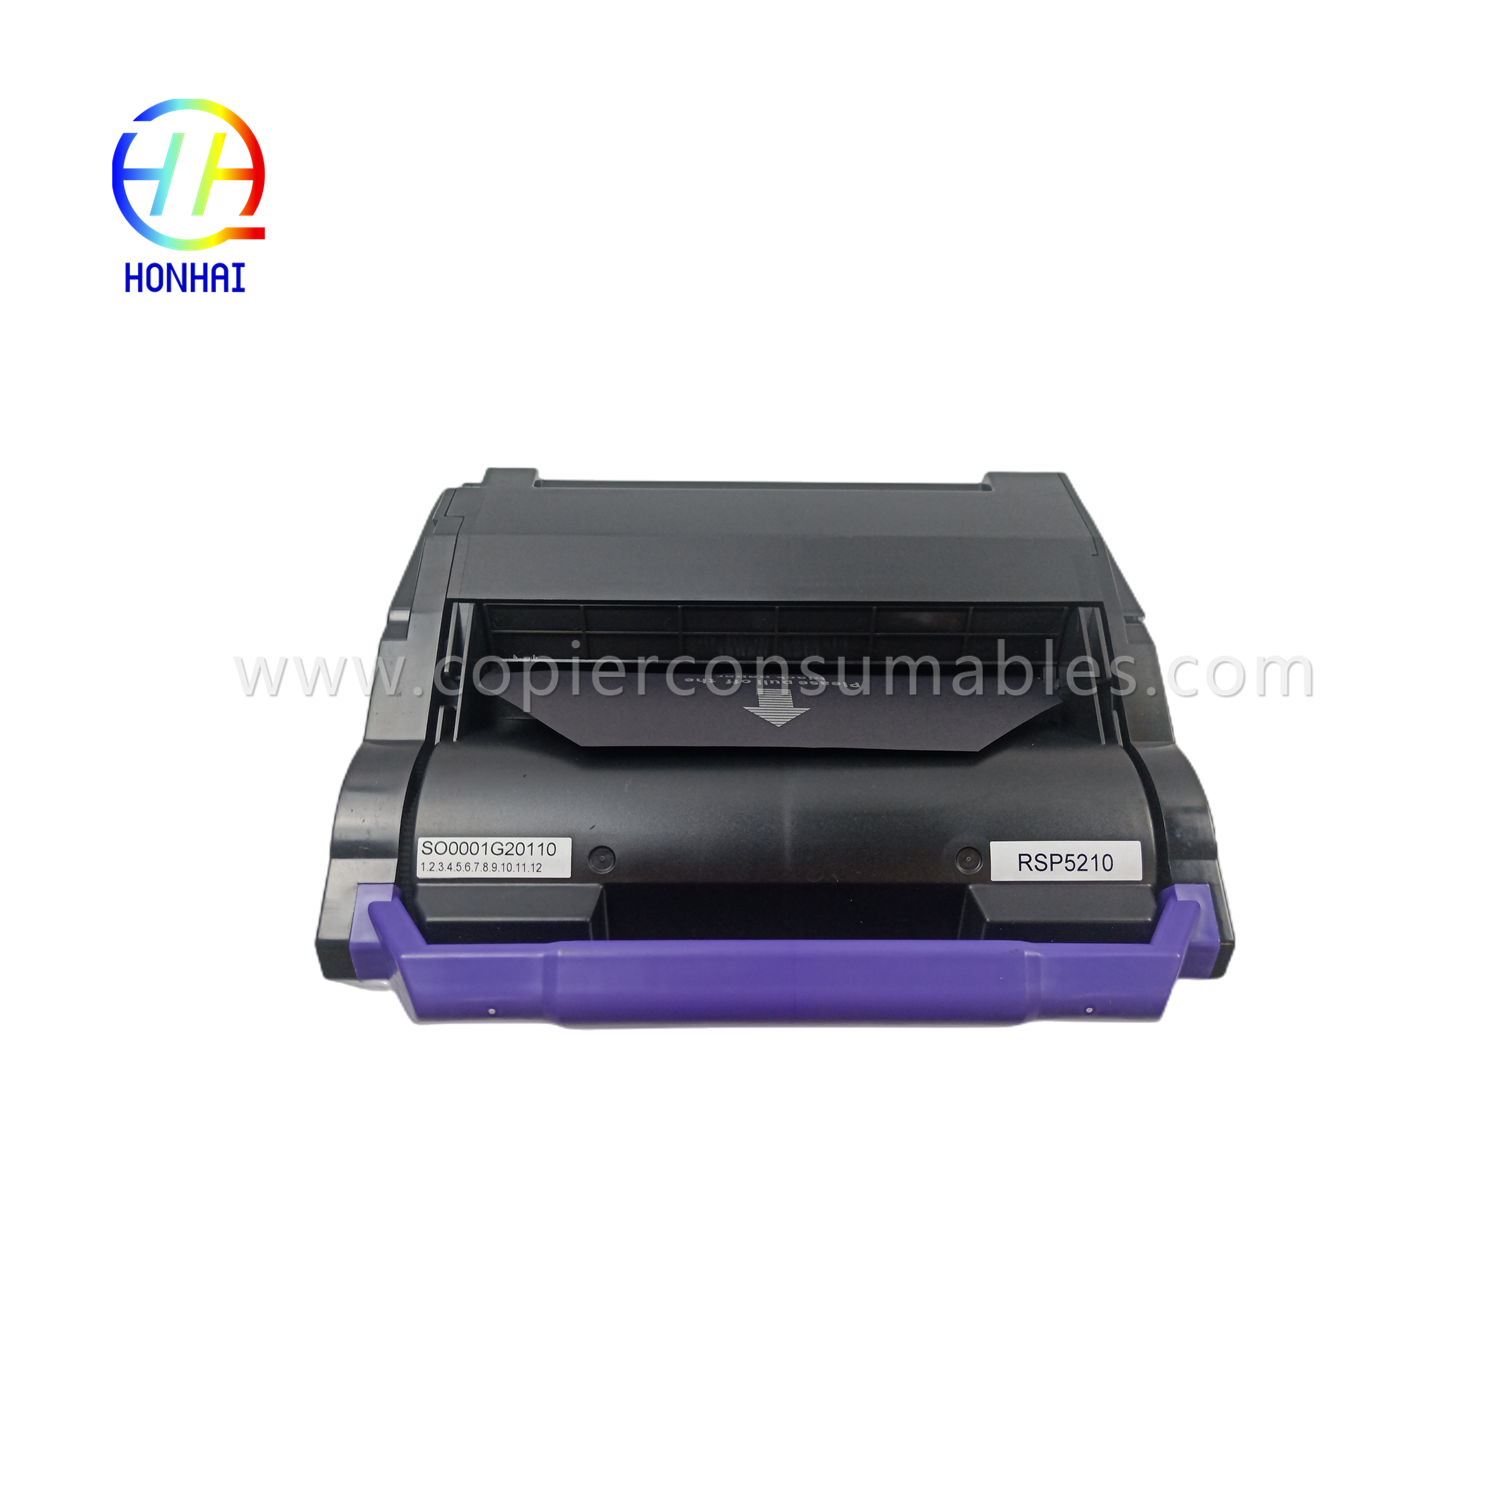 https://www.copierhonhaitech.com/toner-cartridge-zwart-voor-ricoh-406683-sp-5200-5210-product/